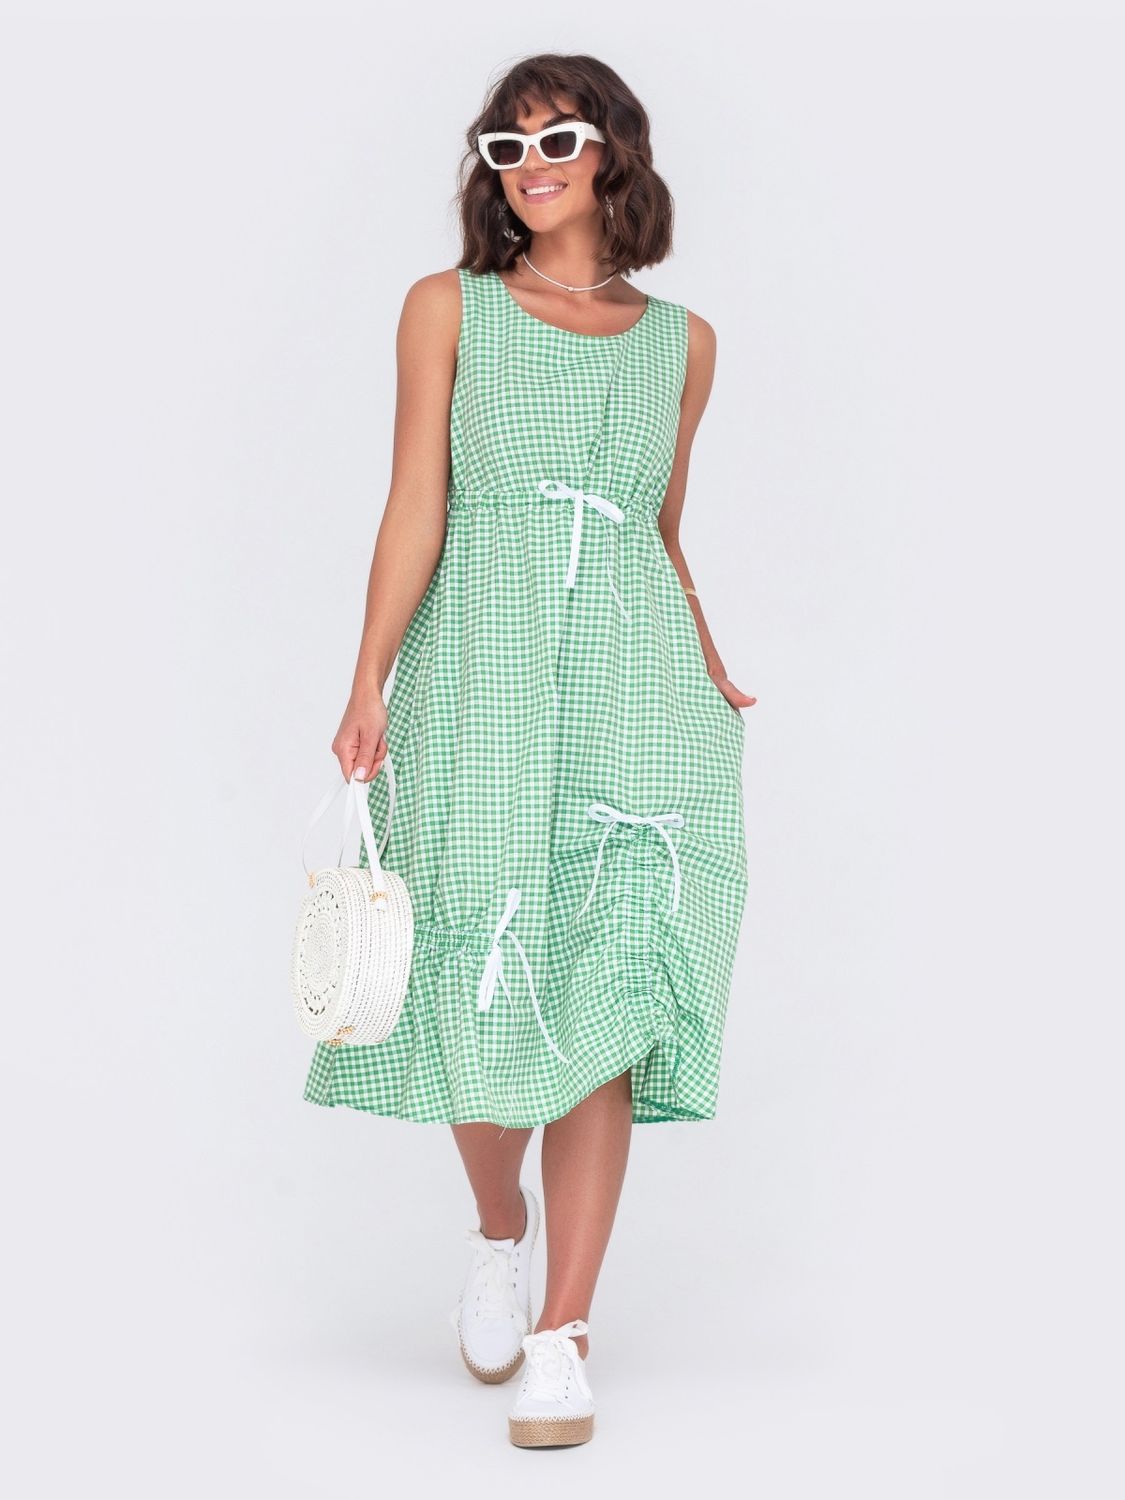 Літня сукня А-силуету в клітку зеленого кольору - фото